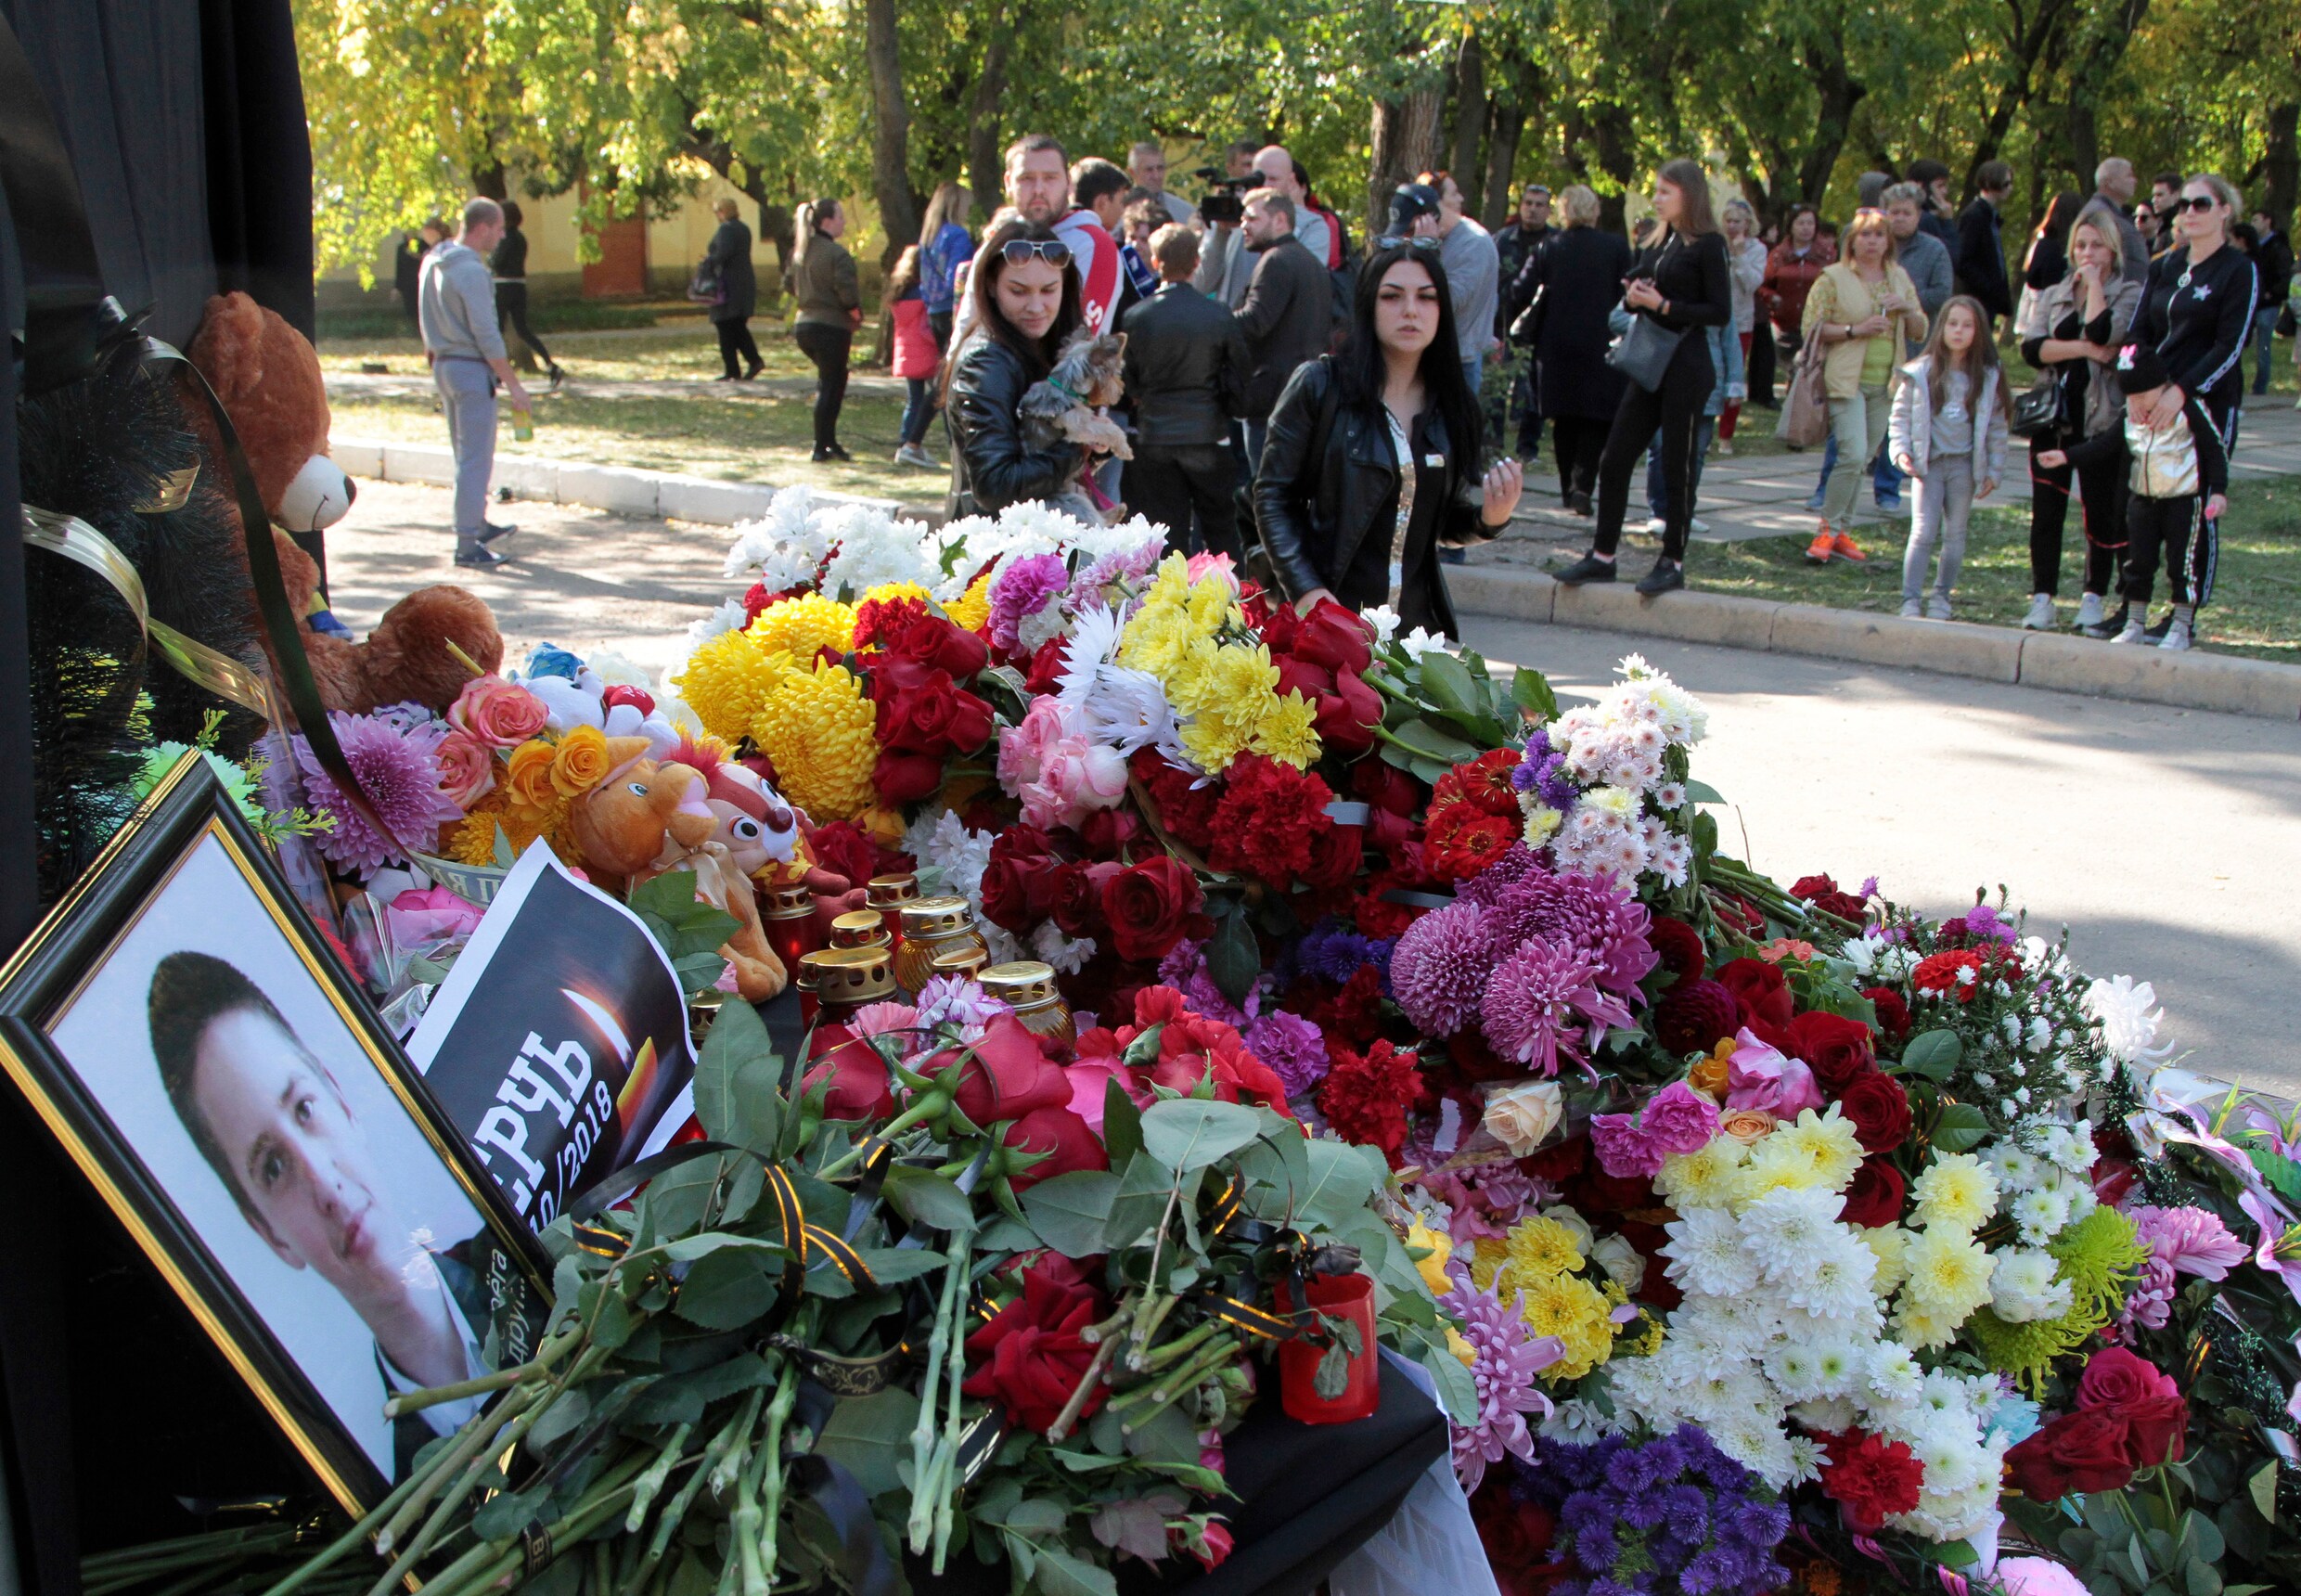 Dodentol na aanslag Krim loopt op tot 20, waaronder 9 minderjarigen